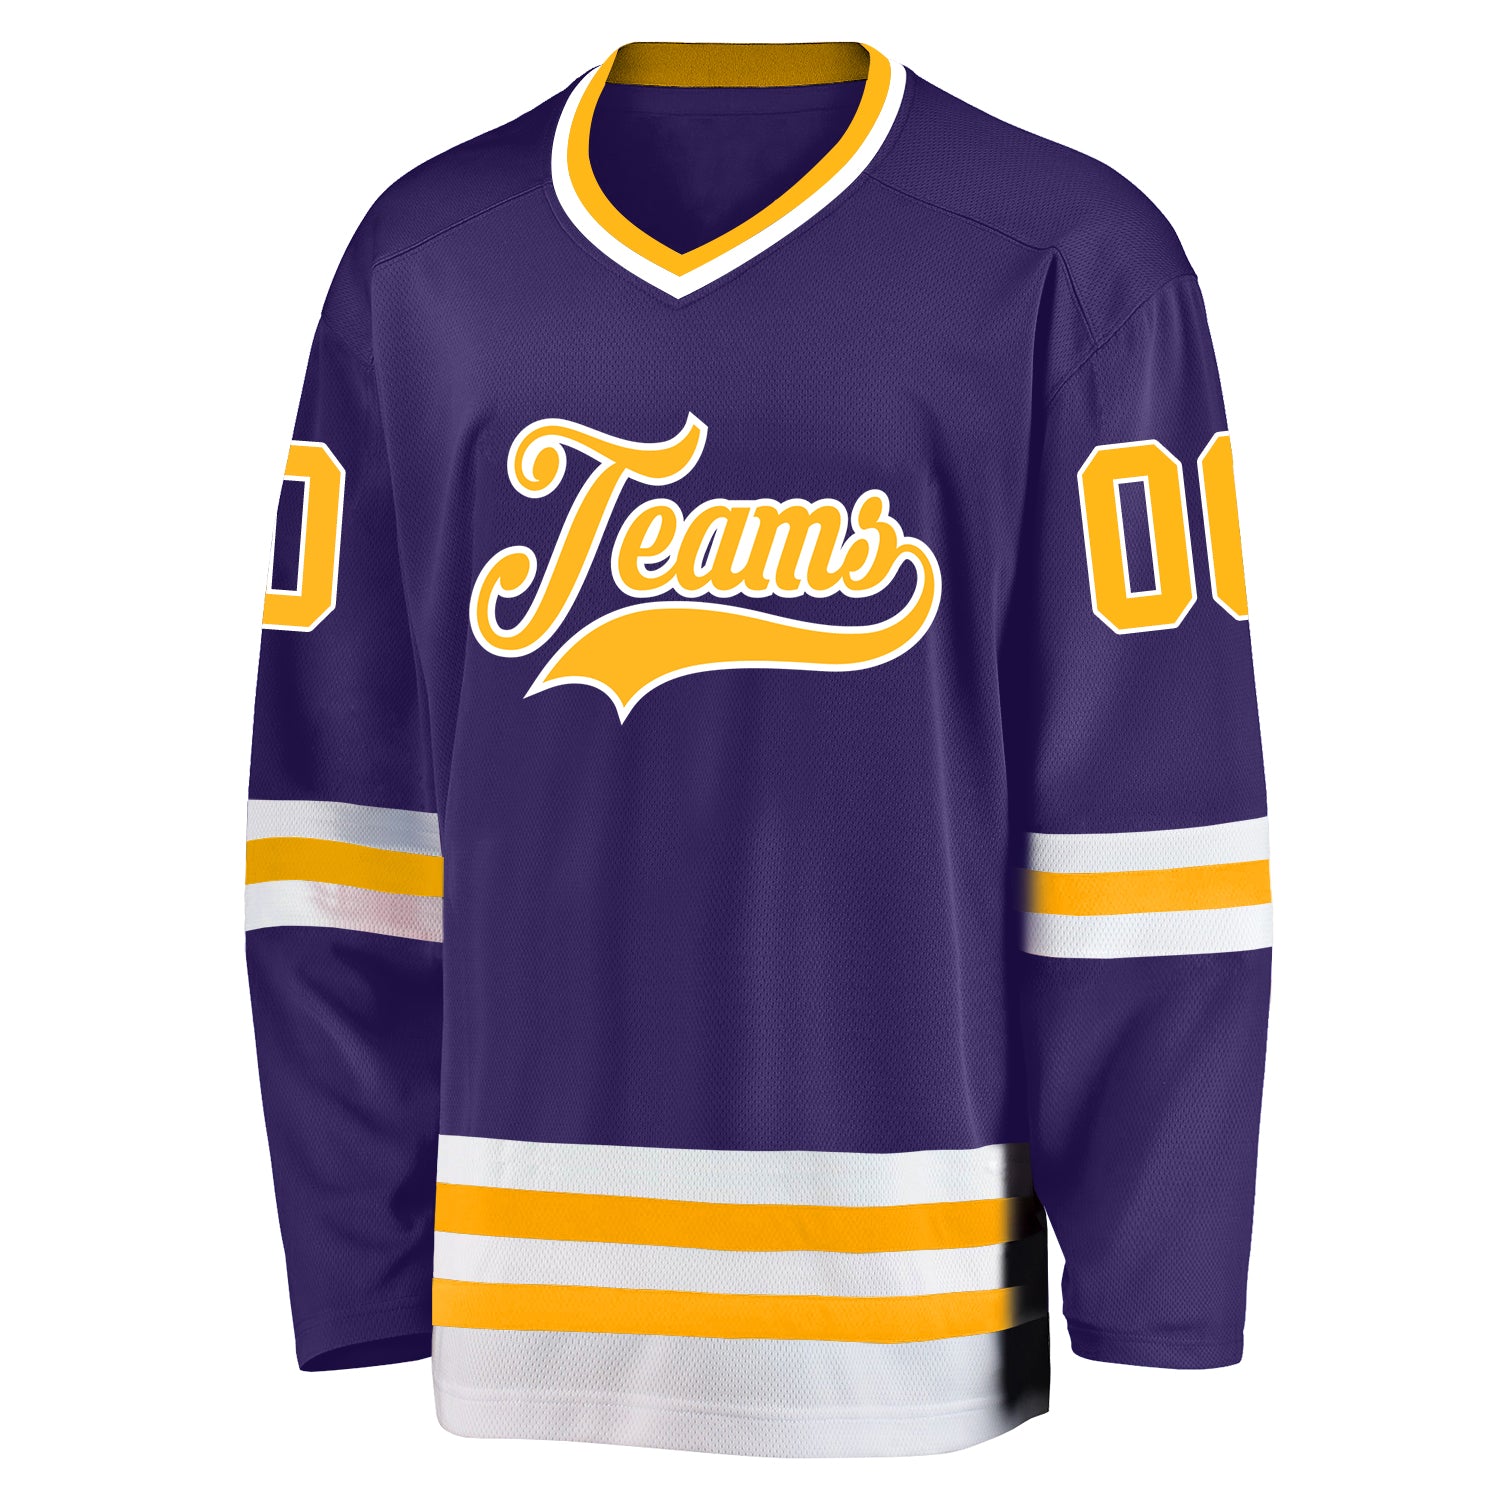 Custom Purple Hockey Jersey Gold-White - FansIdea